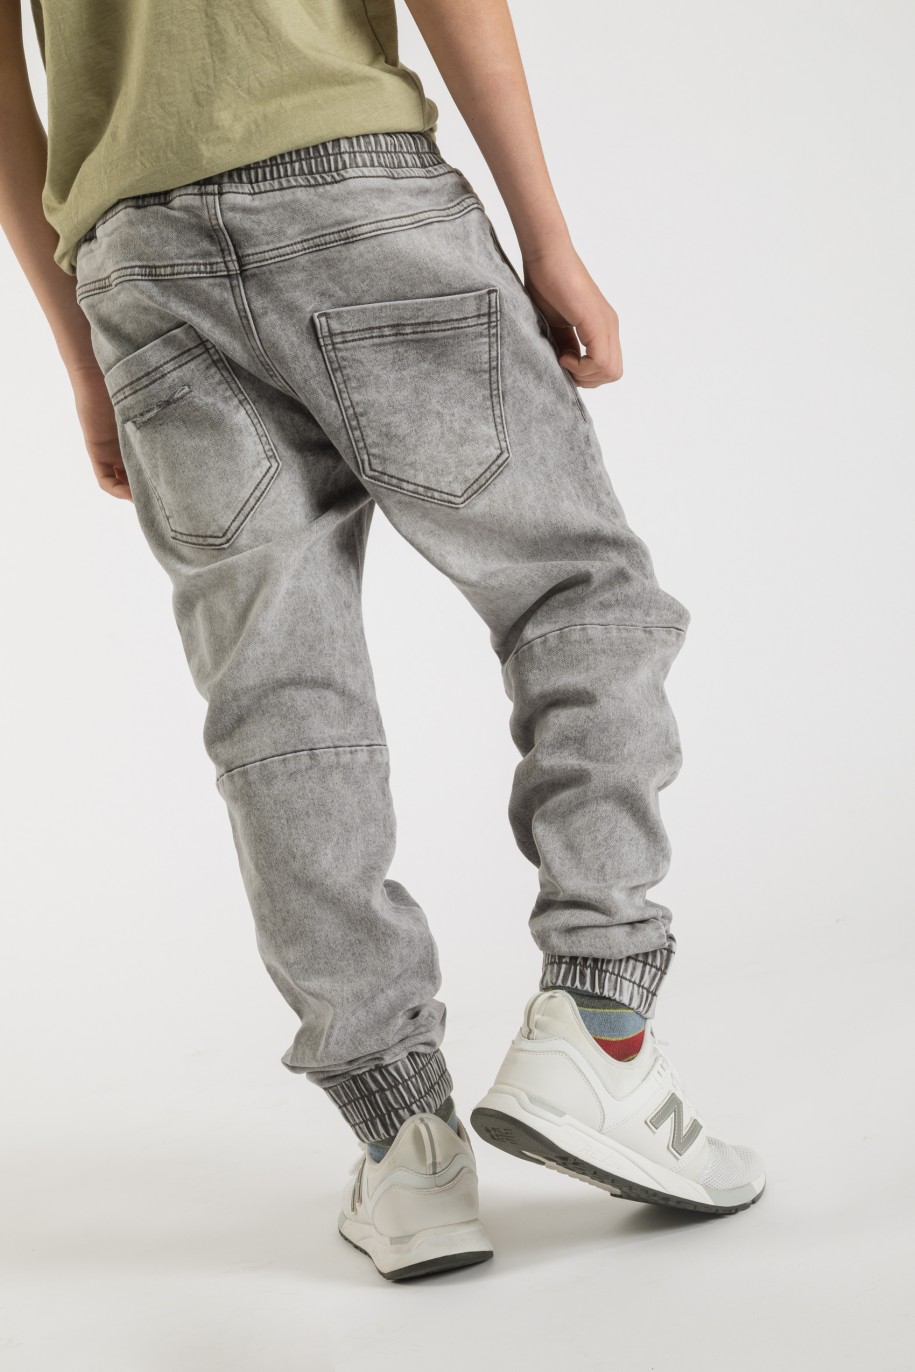 Szare jeansy typu jogger ze ściągaczami dla chłopaka - 33585